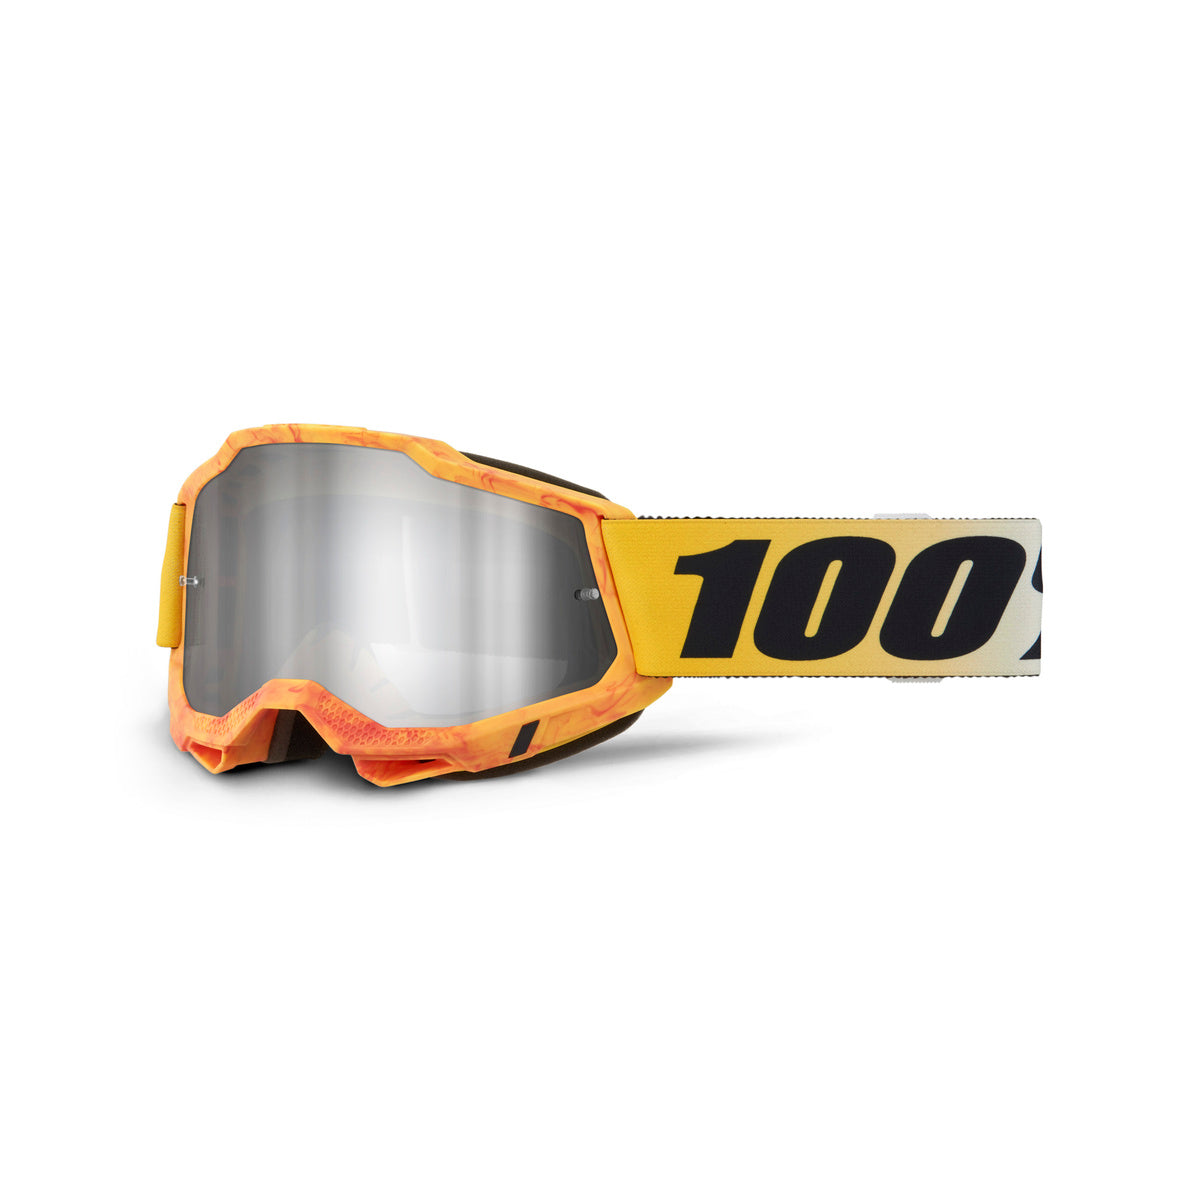 100 Percent Accuri 2 Goggles - One Size Fits Most - Razza - Mirror Silver Lens